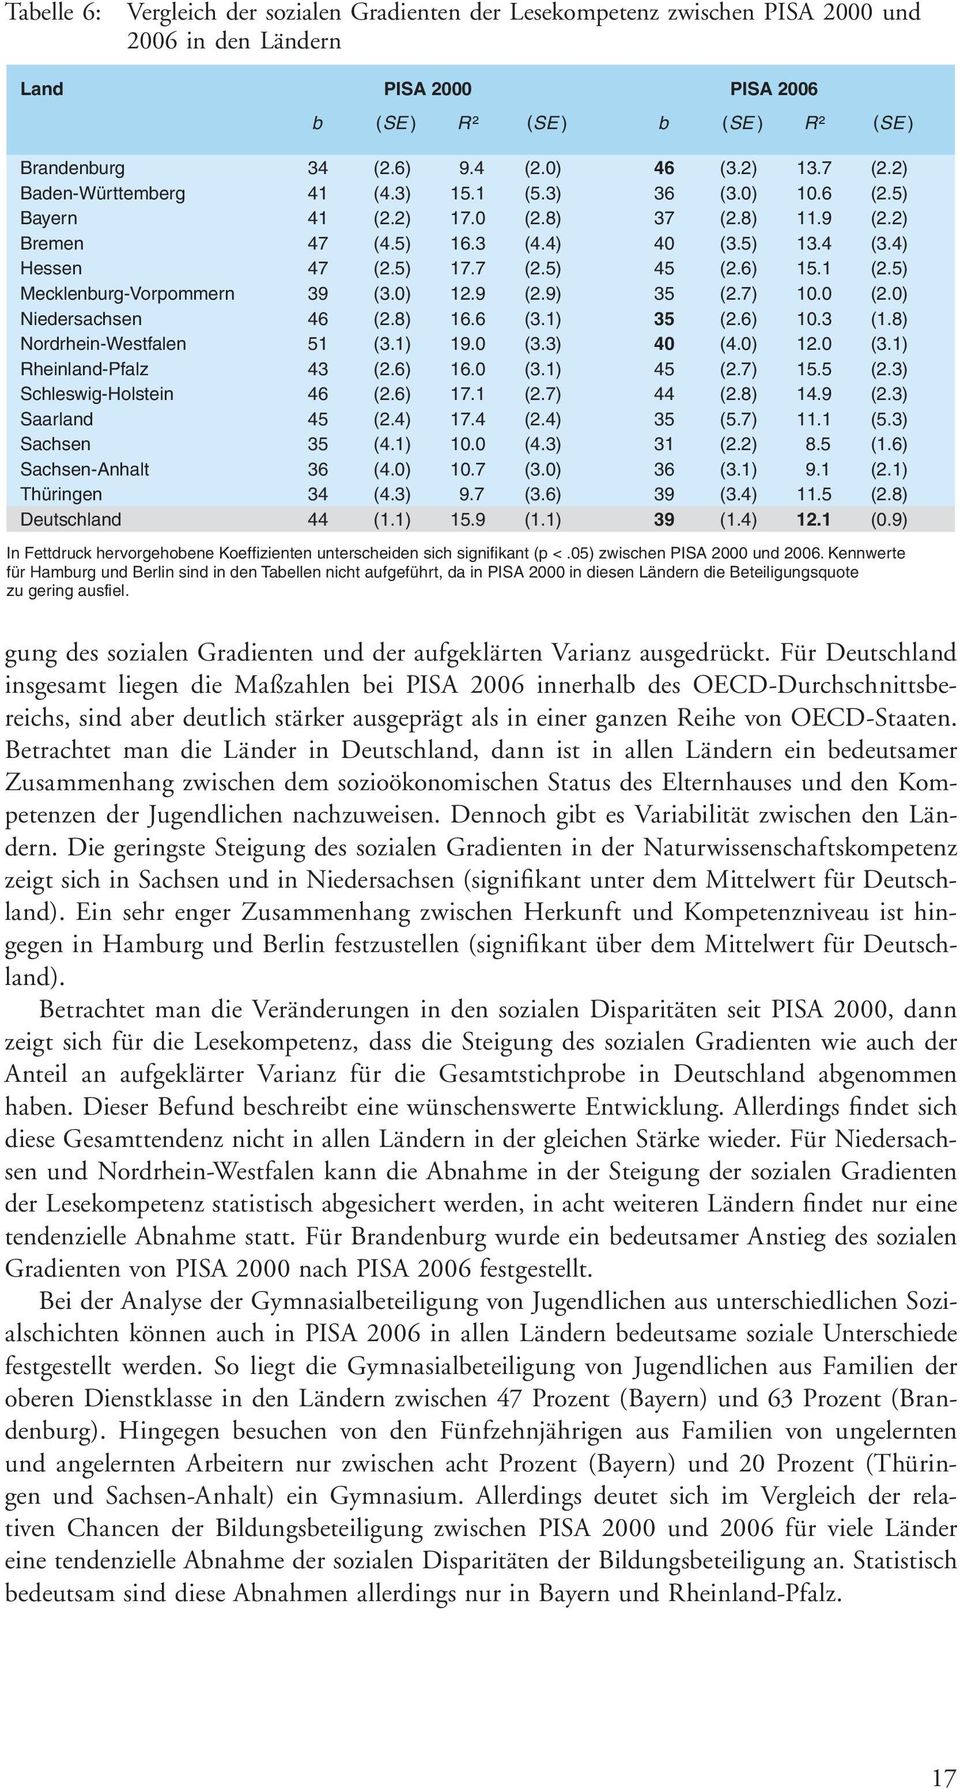 6) 15.1 (2.5) Mecklenburg-Vorpommern 39 (3.0) 12.9 (2.9) 35 (2.7) 10.0 (2.0) Niedersachsen 46 (2.8) 16.6 (3.1) 35 (2.6) 10.3 (1.8) Nordrhein-Westfalen 51 (3.1) 19.0 (3.3) 40 (4.0) 12.0 (3.1) Rheinland-Pfalz 43 (2.